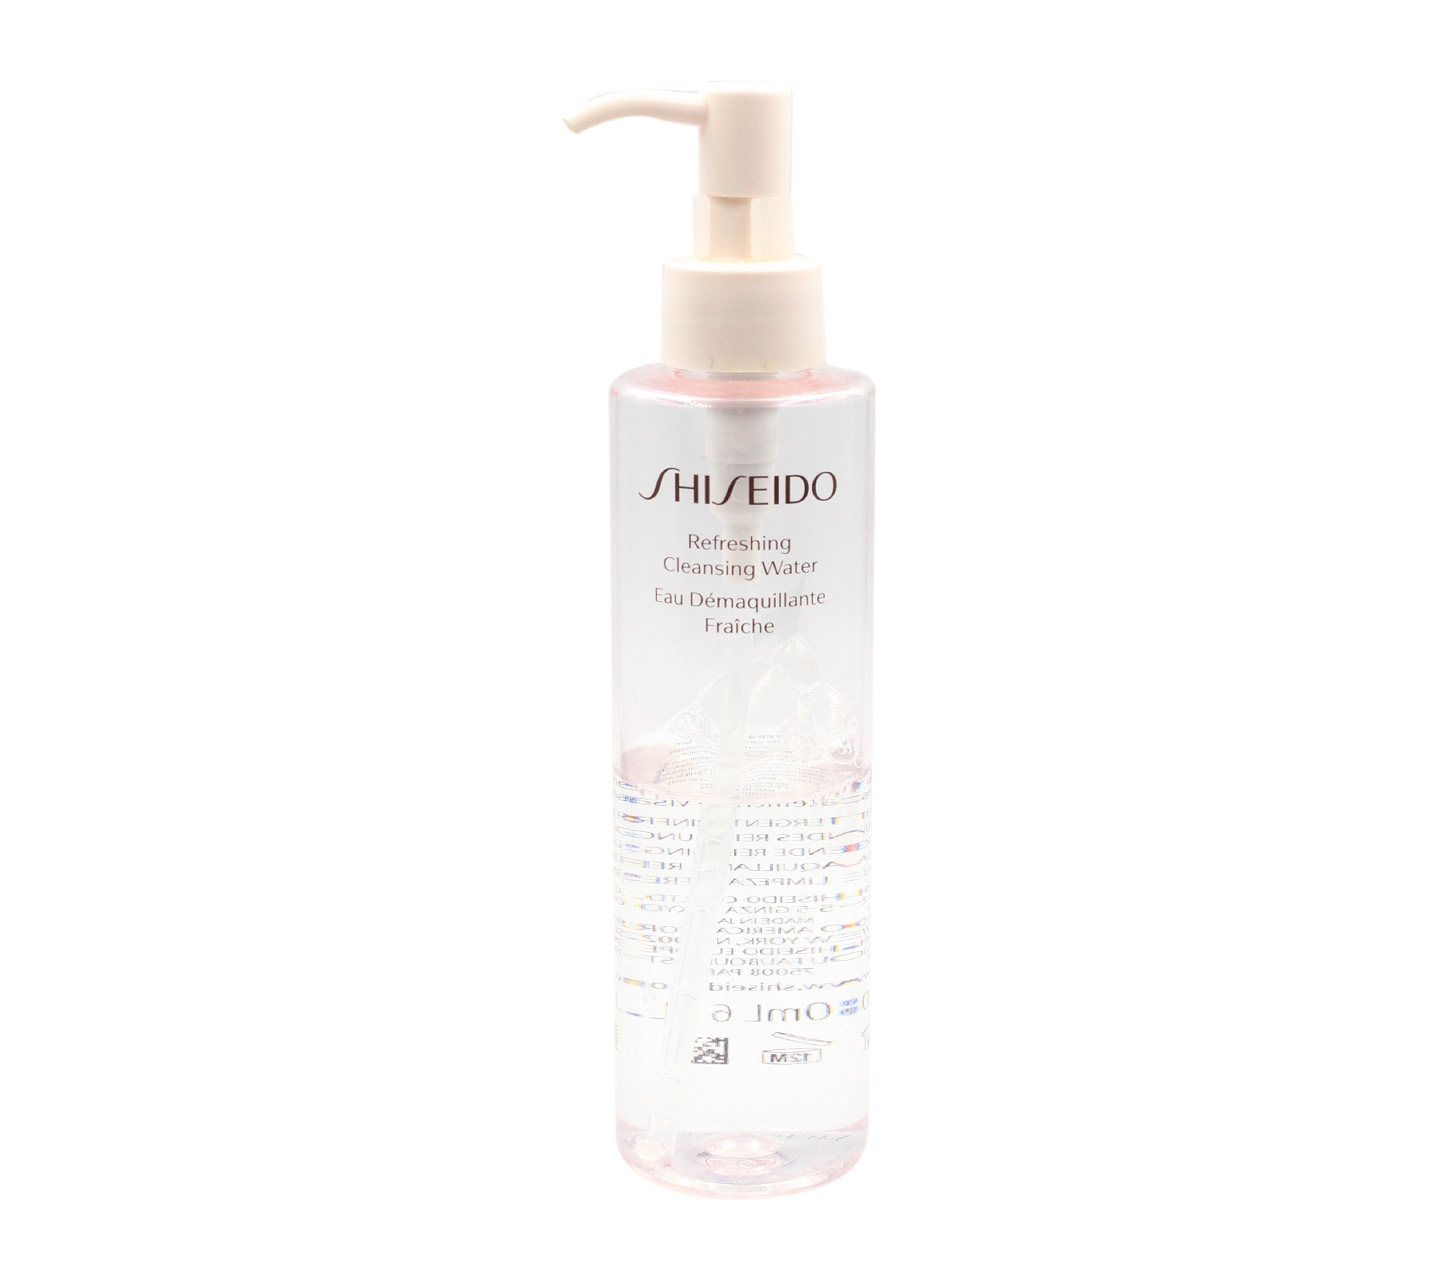 Shiseido Refreshing Cleansing Water Skin Care